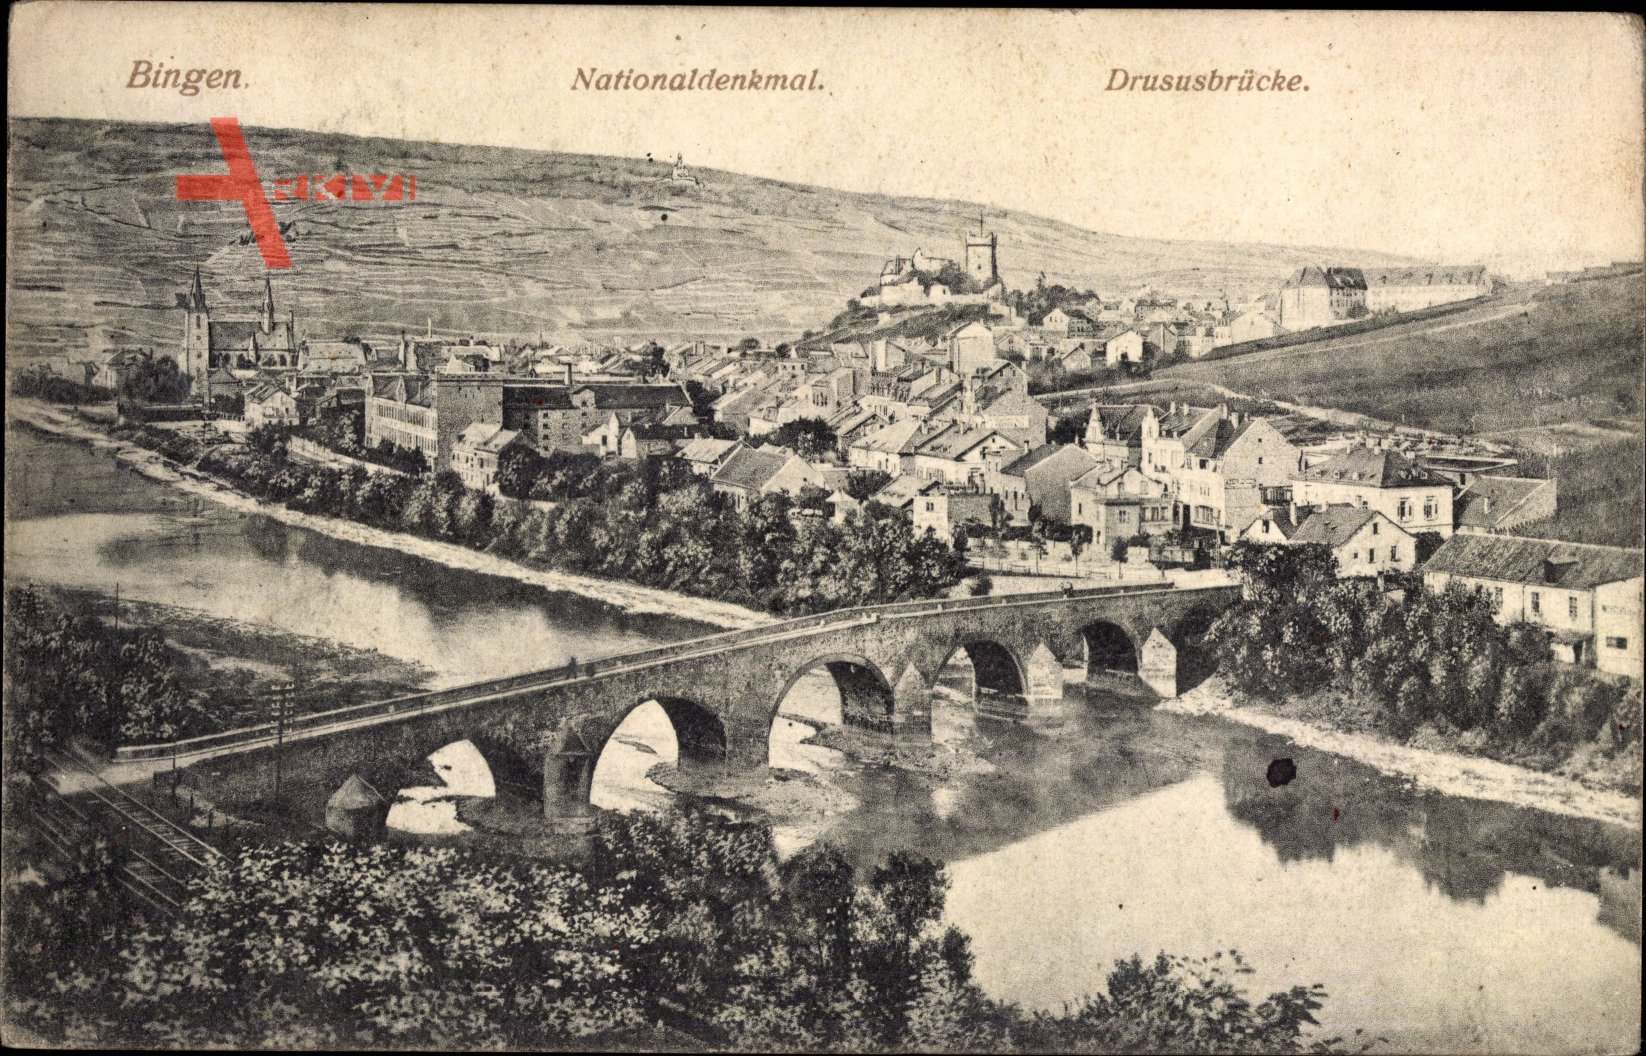 Bingen am Rhein, Nationaldenkmal, Drususbrücke, Ort, Flusspartie